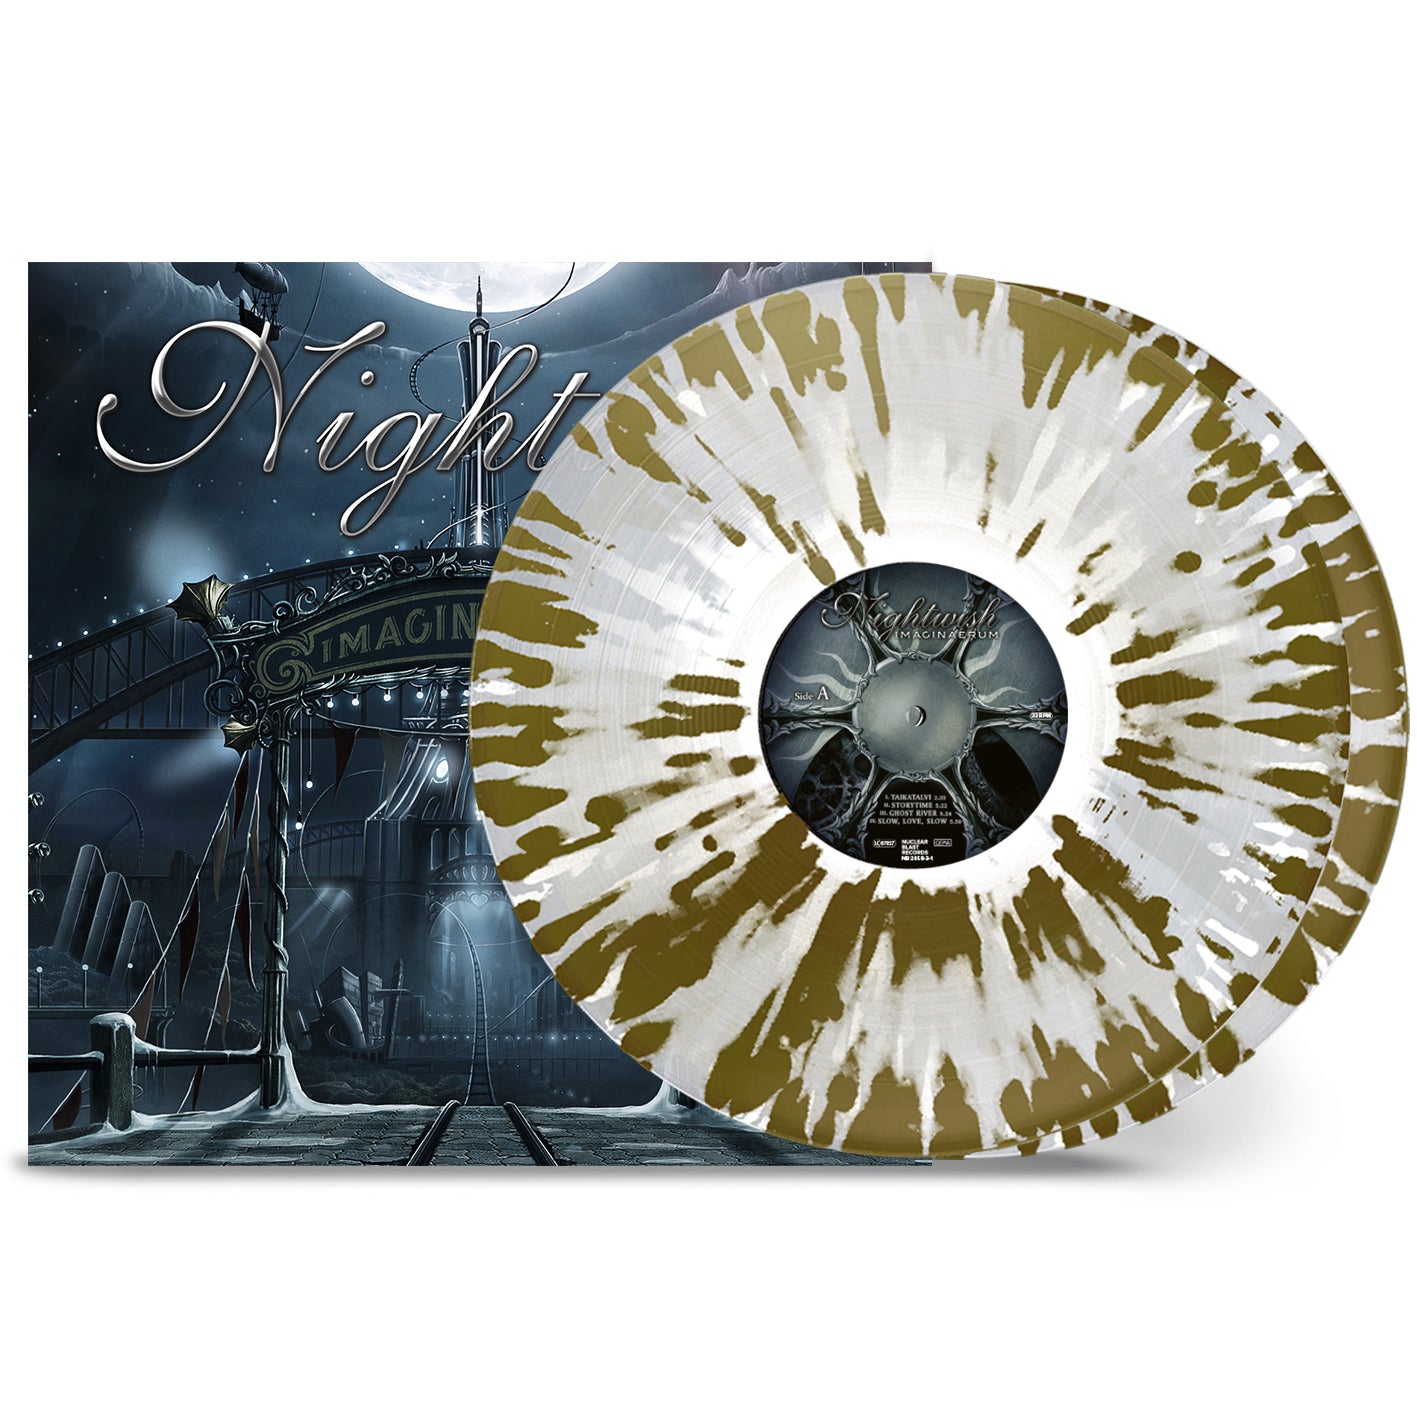 Nightwish "Imaginaerum" 2x12" Clear Gold White Splatter Vinyl - PRE-ORDER